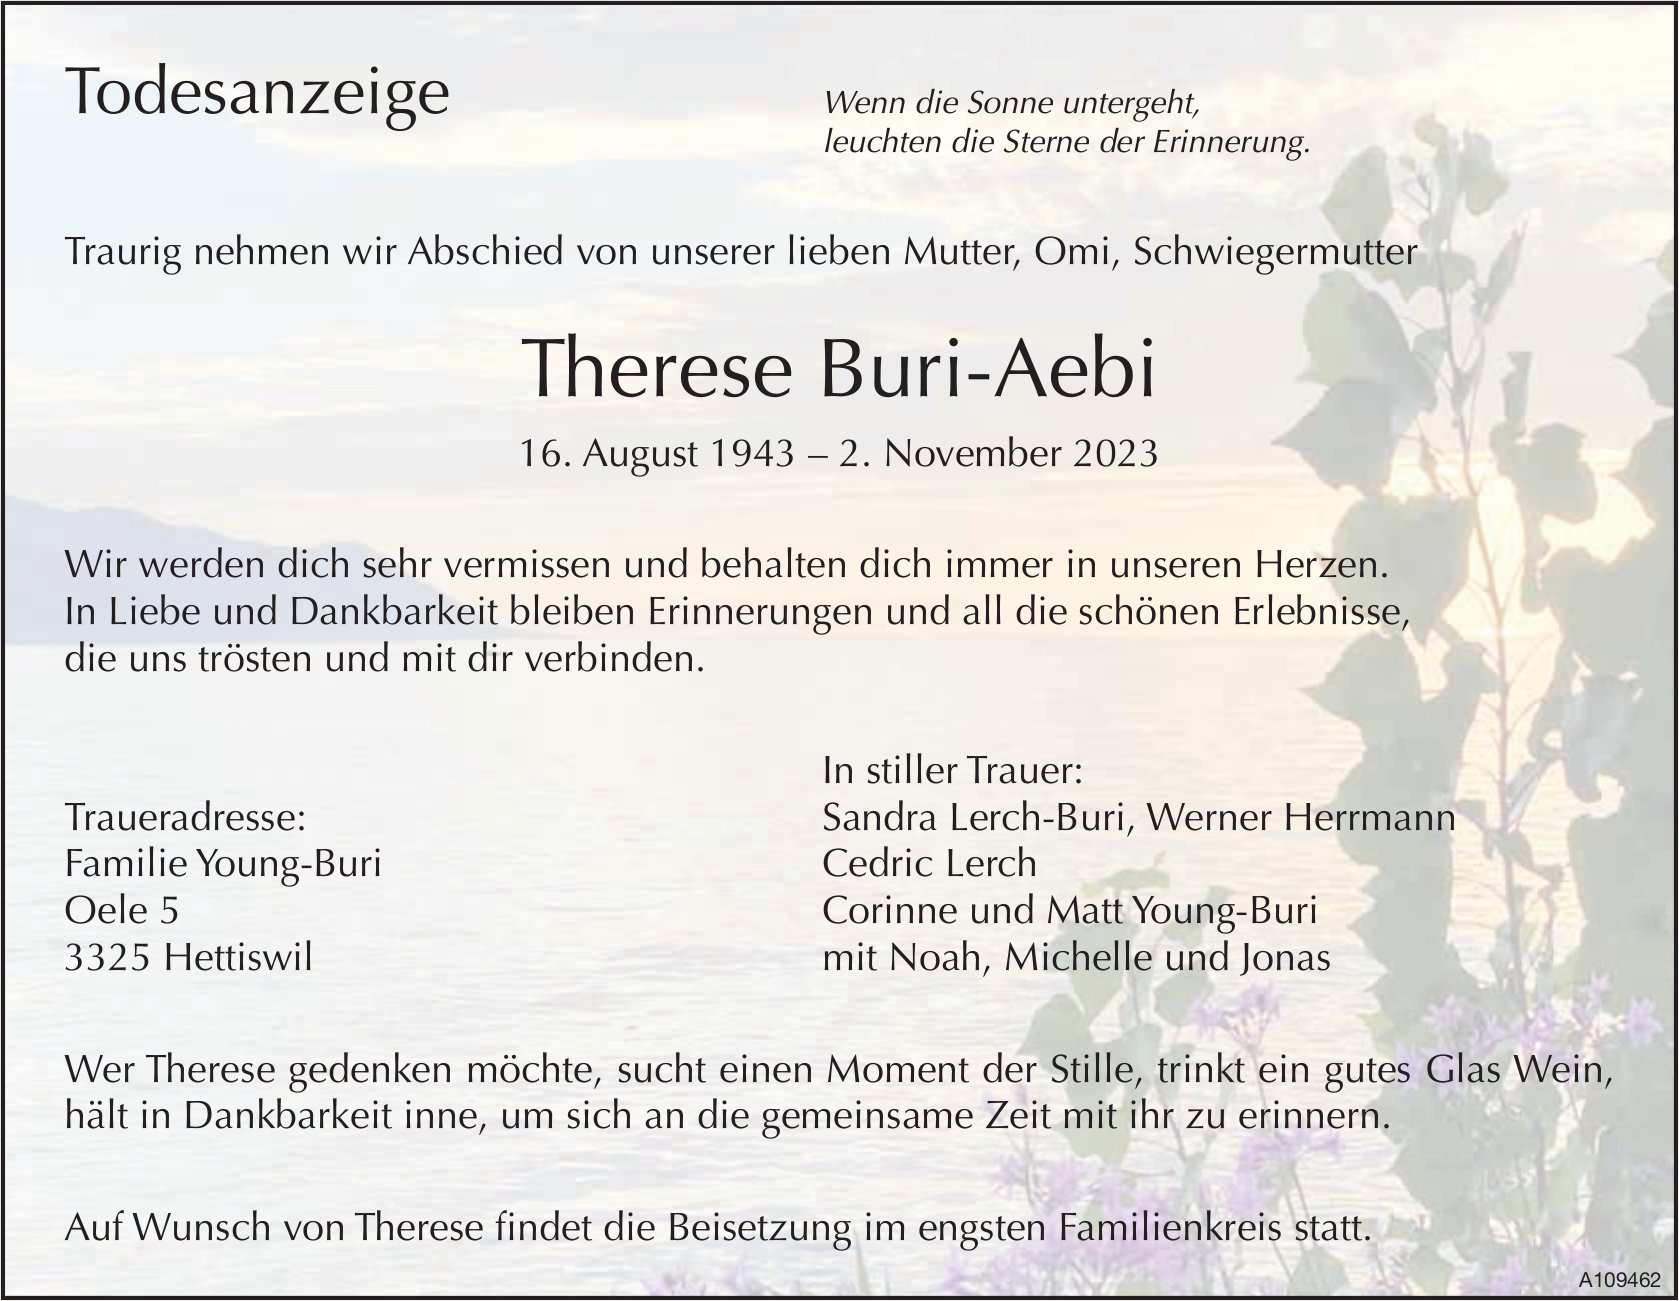 Therese Buri-Aebi, November 2023 / TA